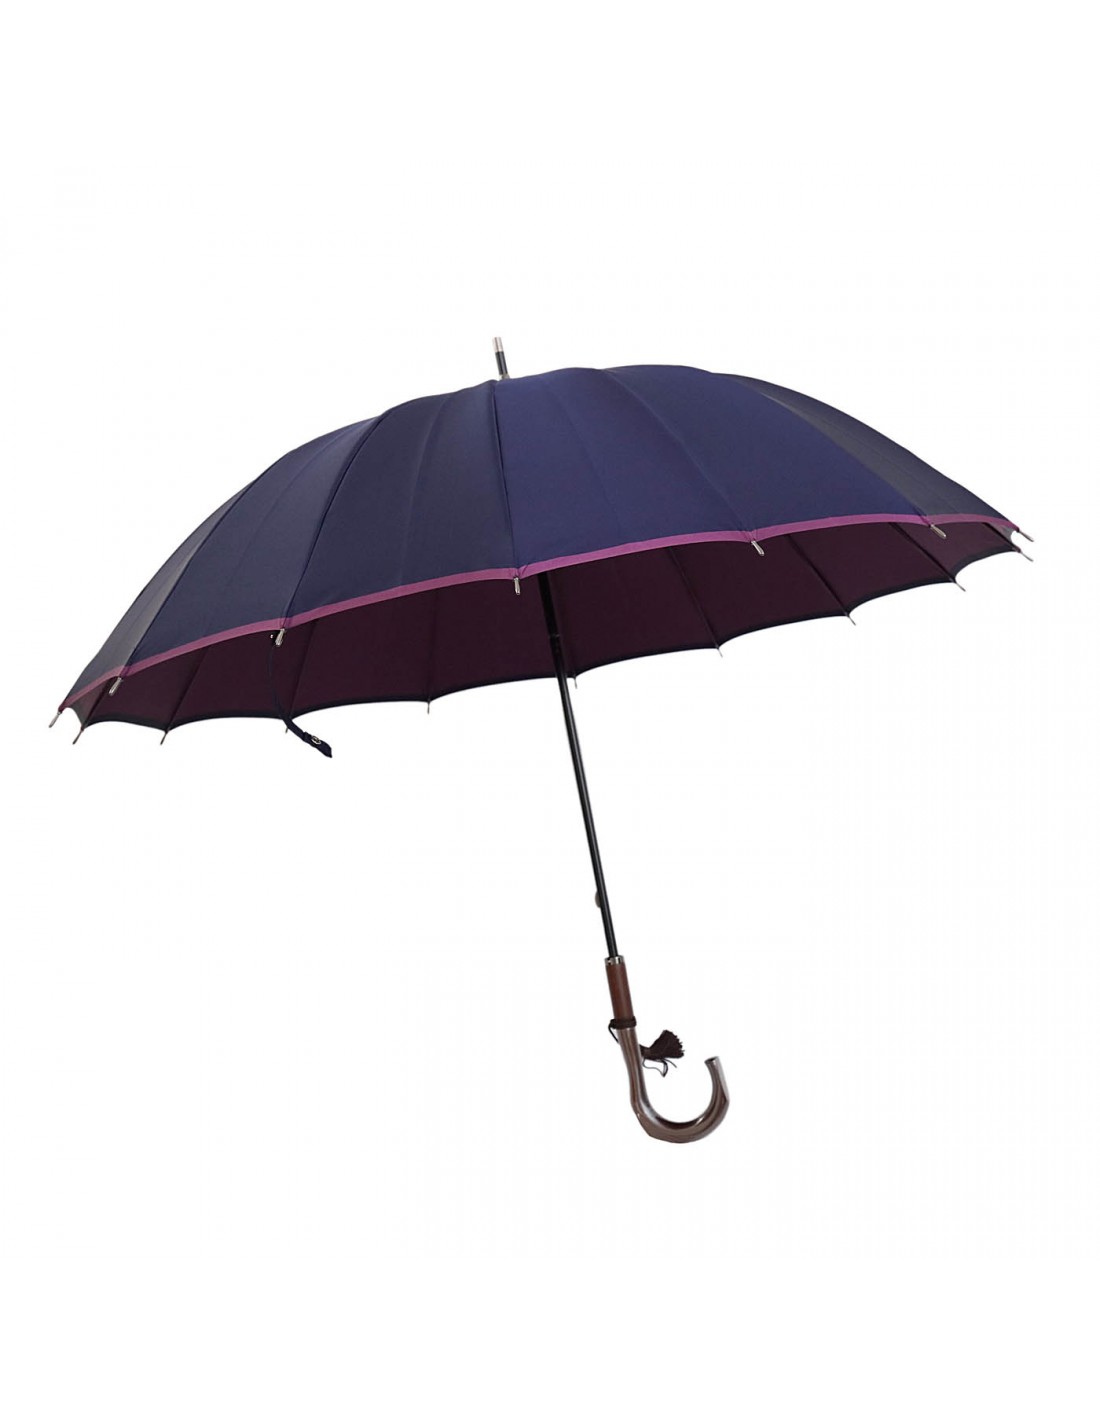 Damen Regenschirm Navy/Violett